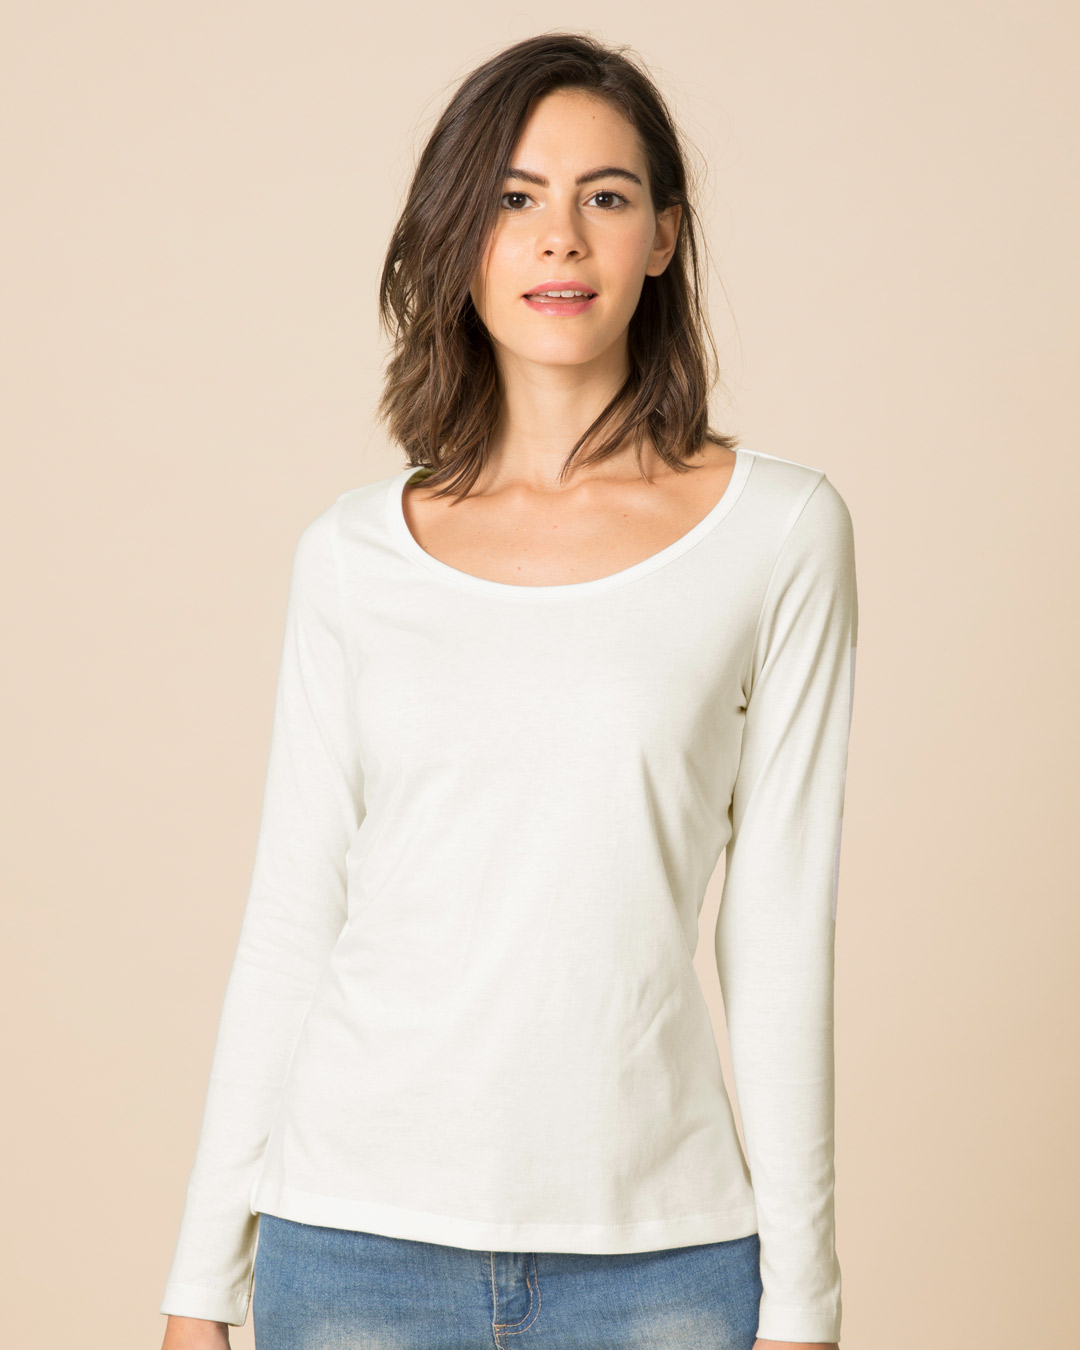 Buy Off White Scoop Neck Full Sleeve T-Shirt for Women white Online at ...